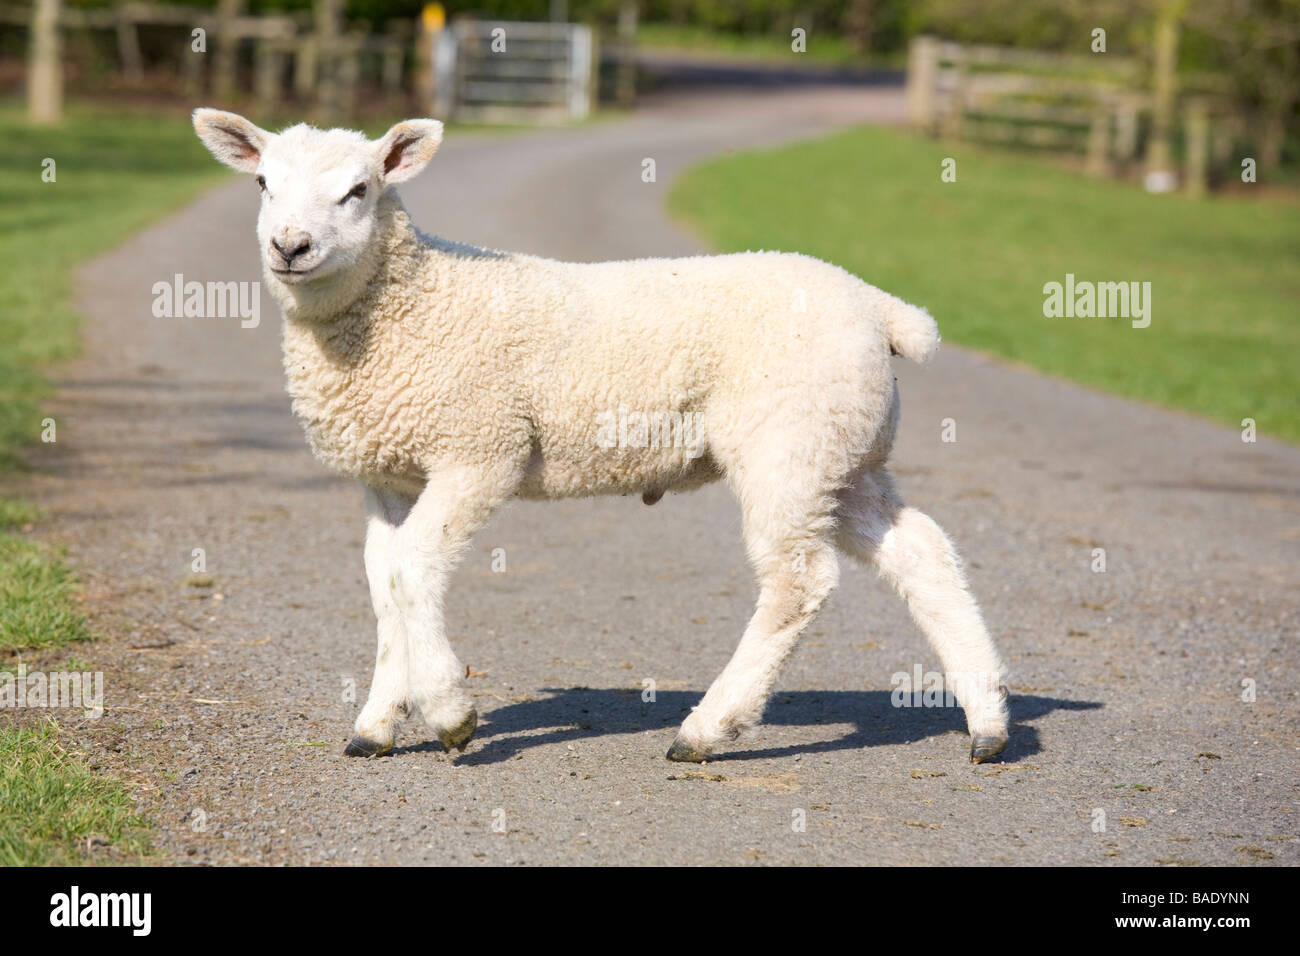 Un jeune agneau debout sur une route de campagne en passant par des champs verts Banque D'Images